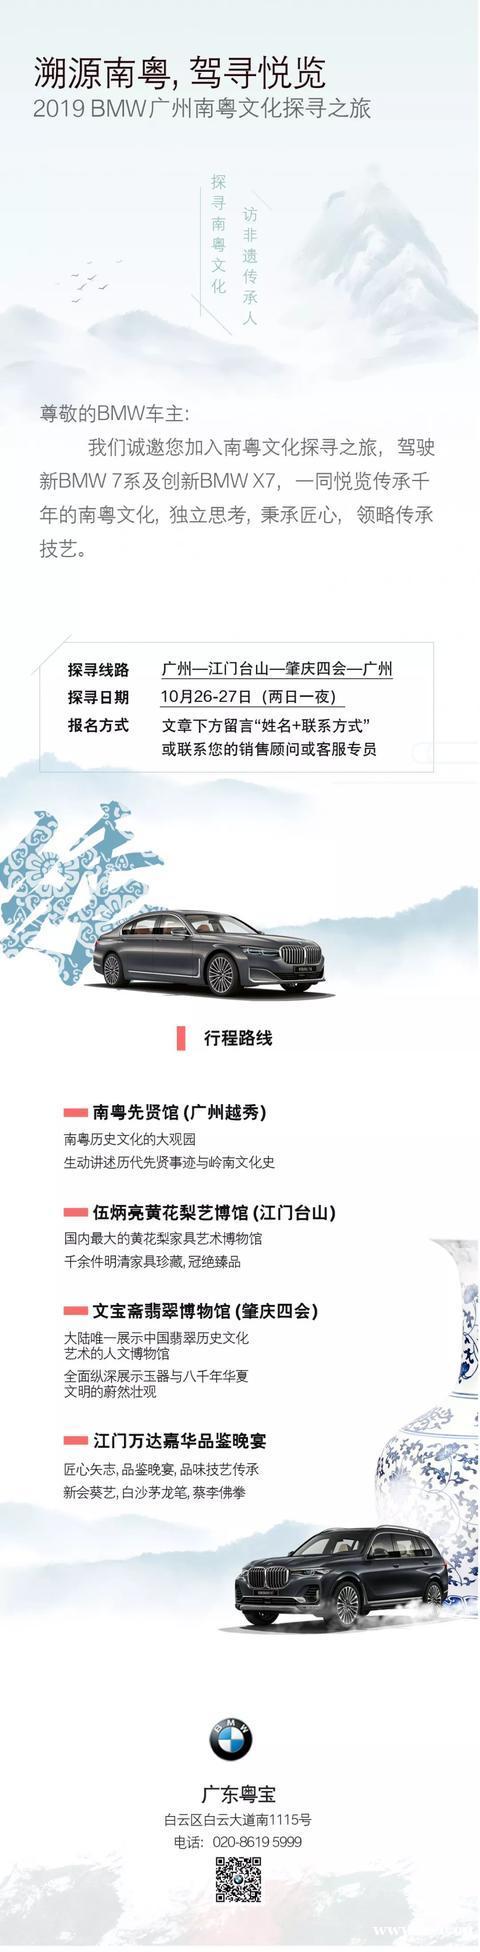 2019 BMW广州文化探寻之旅，广东粤宝邀您一起见证